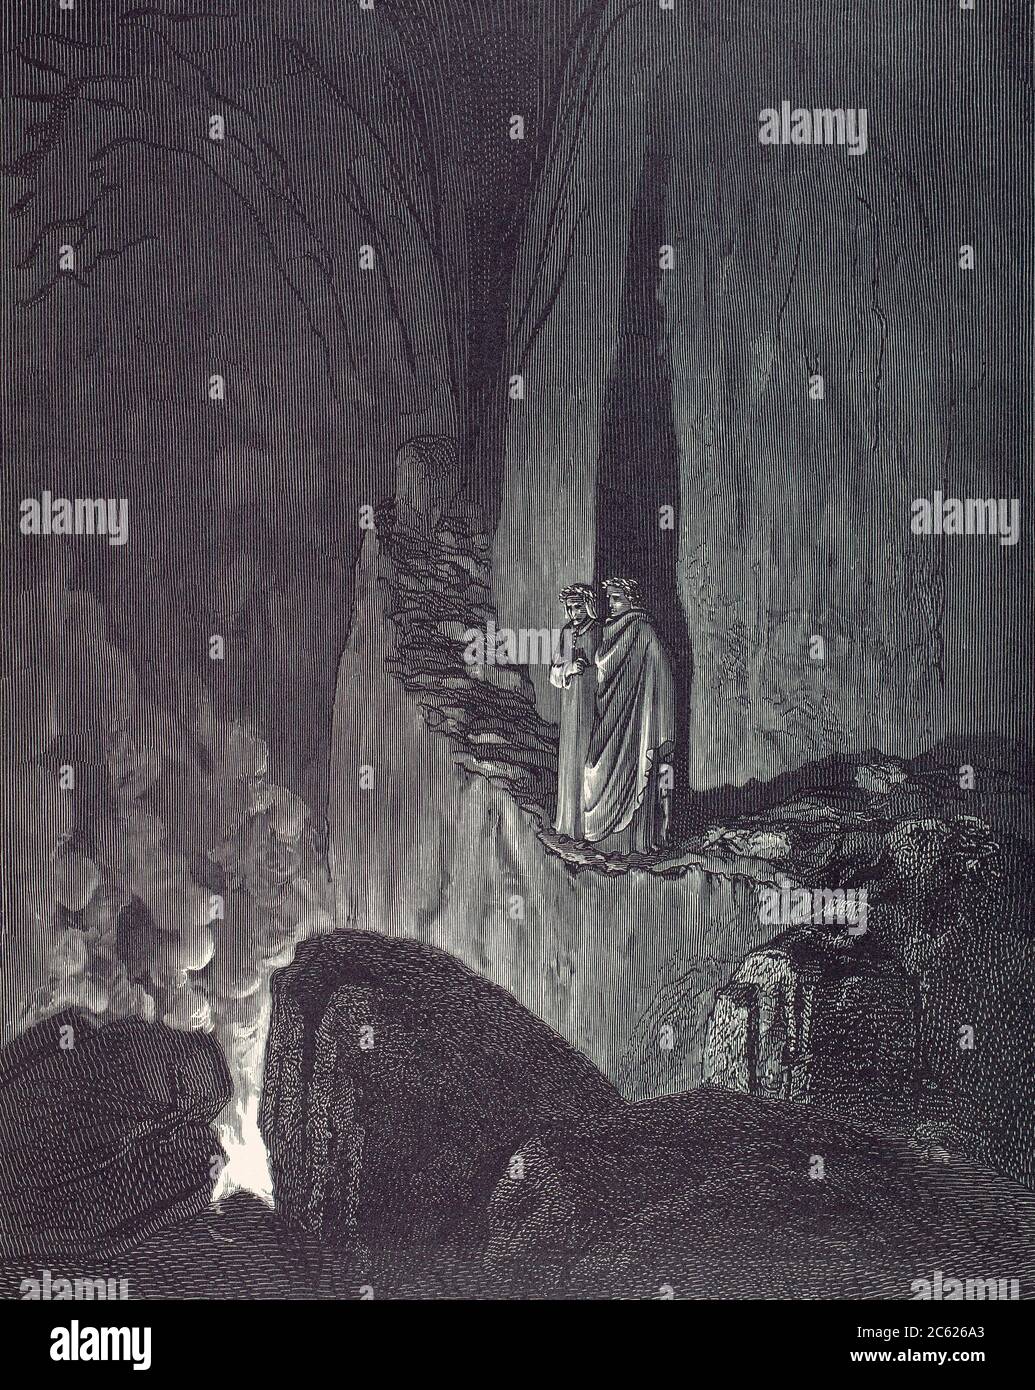 La visión del infierno. Ilustración de Gustave Dore para Inferno de Dante Alighieri, la primera parte de la trilogía épica del poema narrativo la Divina Comedia. Foto de stock